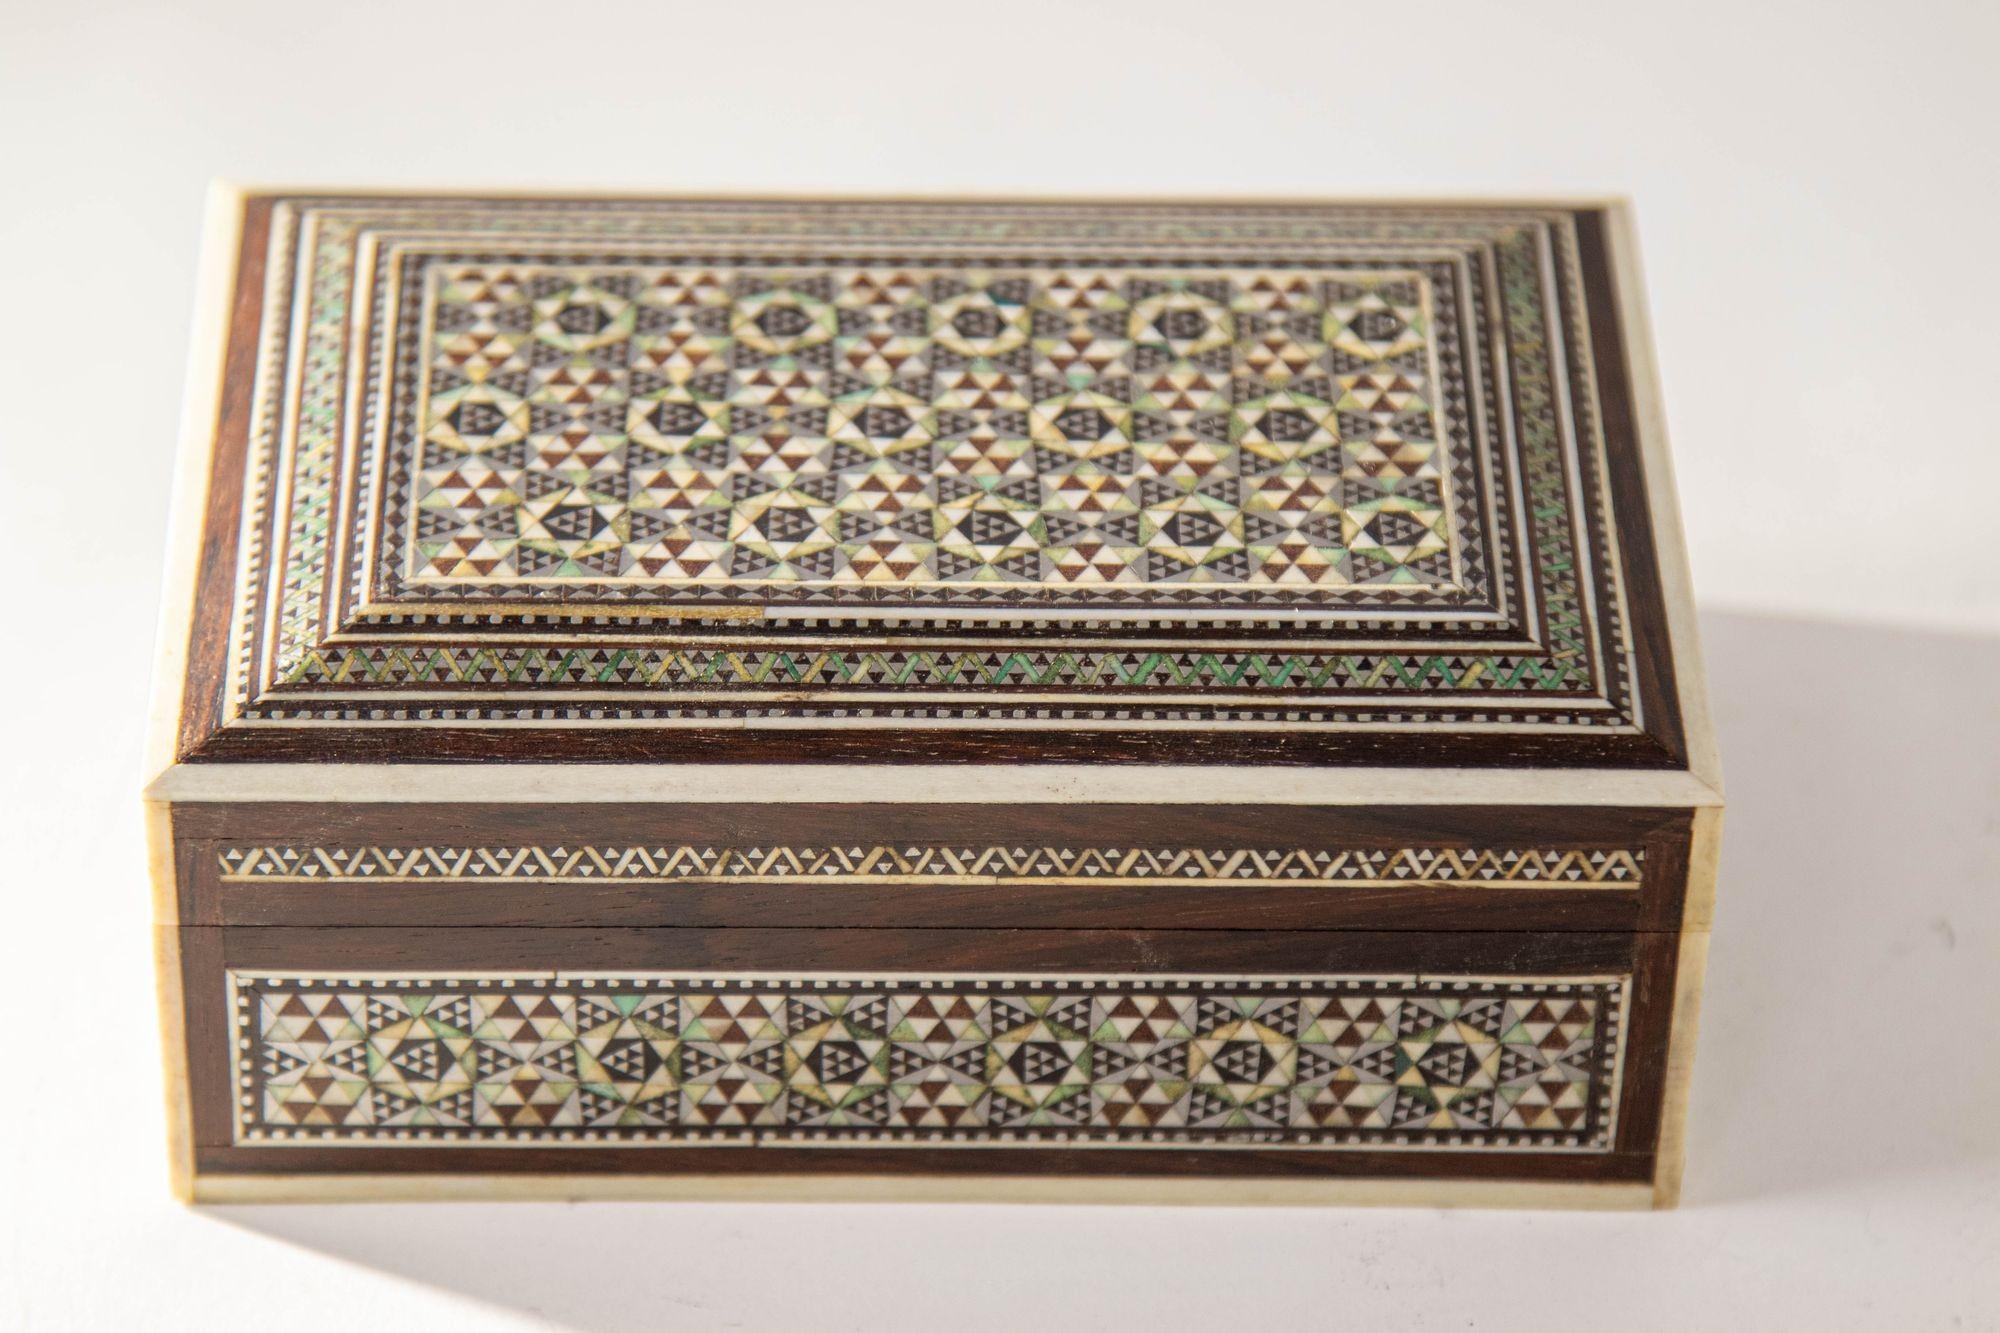 Vintage 1940s Mosaik Perlmutt Intarsien dekorative Nahost islamischen Box.
Mosaik Luxus dekorative Nahost islamischen Vanity Box.
Asiatische Mosaikholzkiste aus dem Nahen Osten mit Intarsien aus Knochen und Perlmutt, um 1940
Exquisite handgefertigte